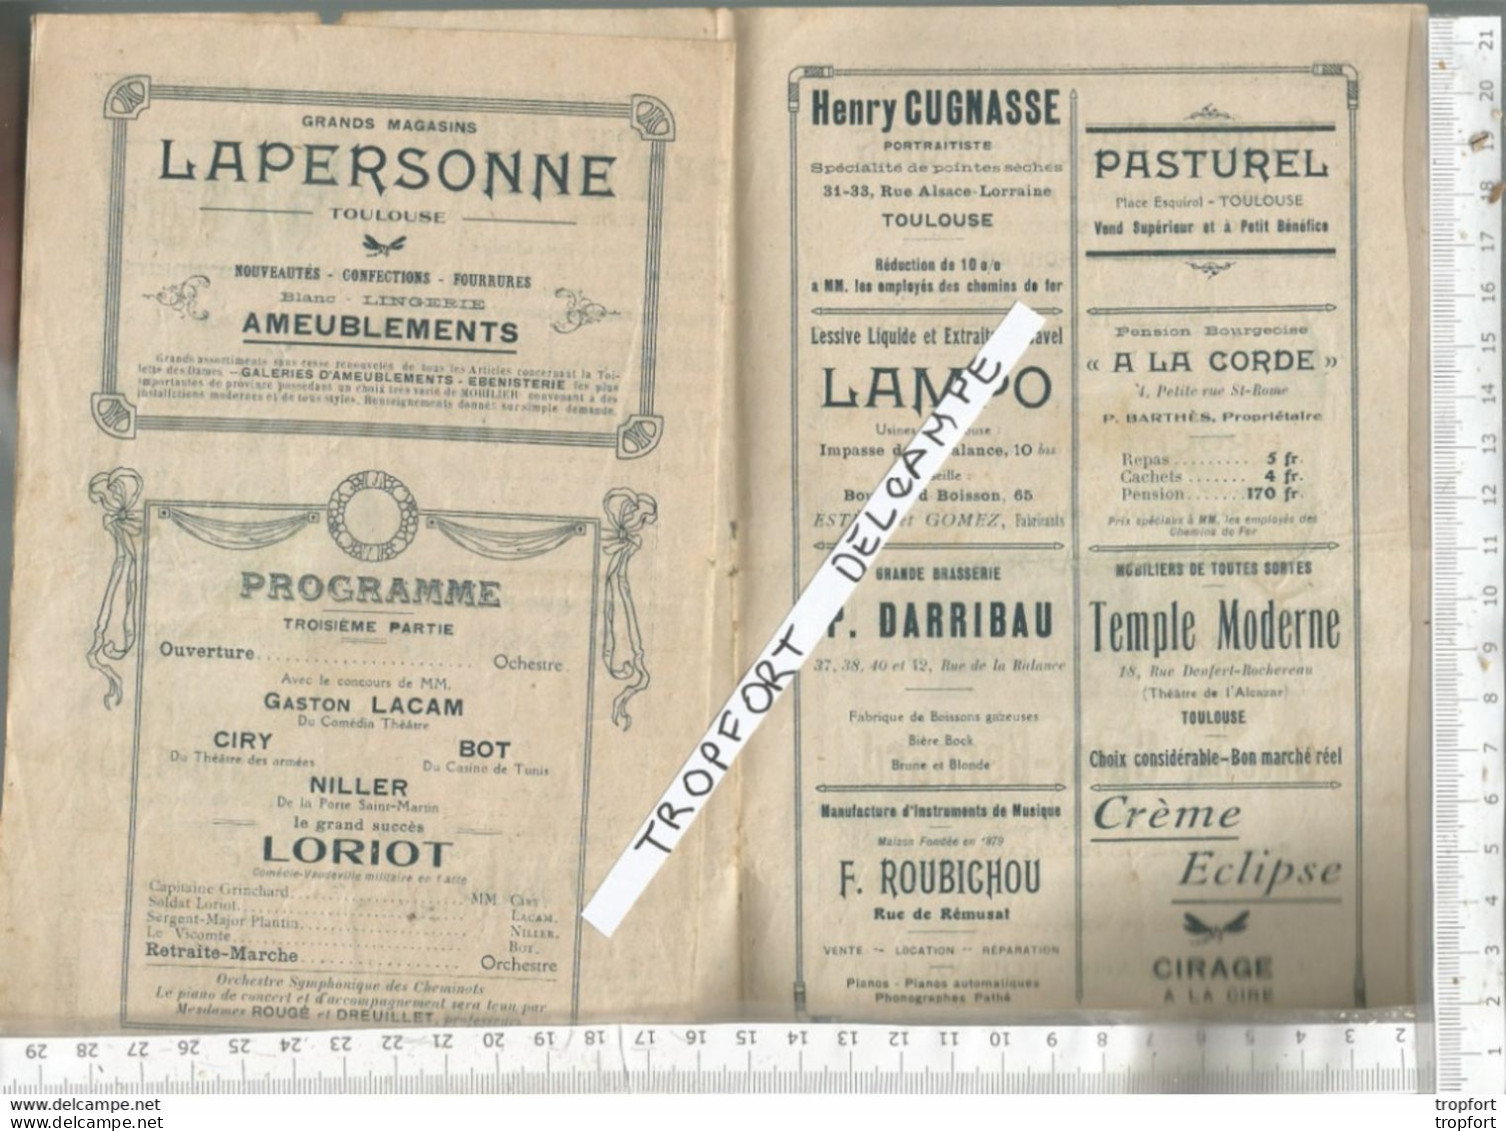 PG / Vintage // PROGRAMME Ancien  GALA ARTISTIQUE TOULOUSE  CHEMINOTS // Théâtre Music Hall - Programs